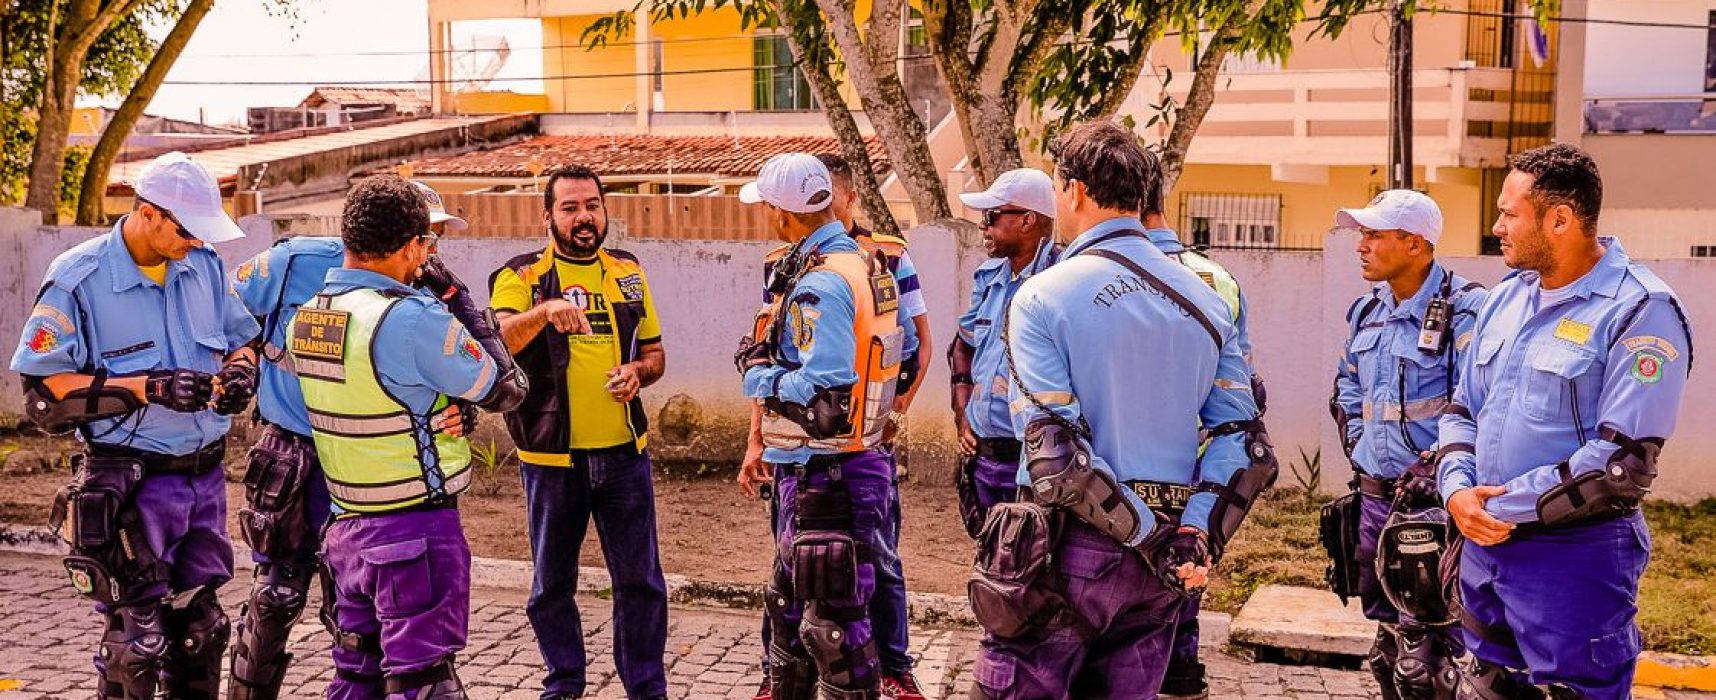 Agentes do trânsito de Ilhéus participam de capacitação profissional em Salvador